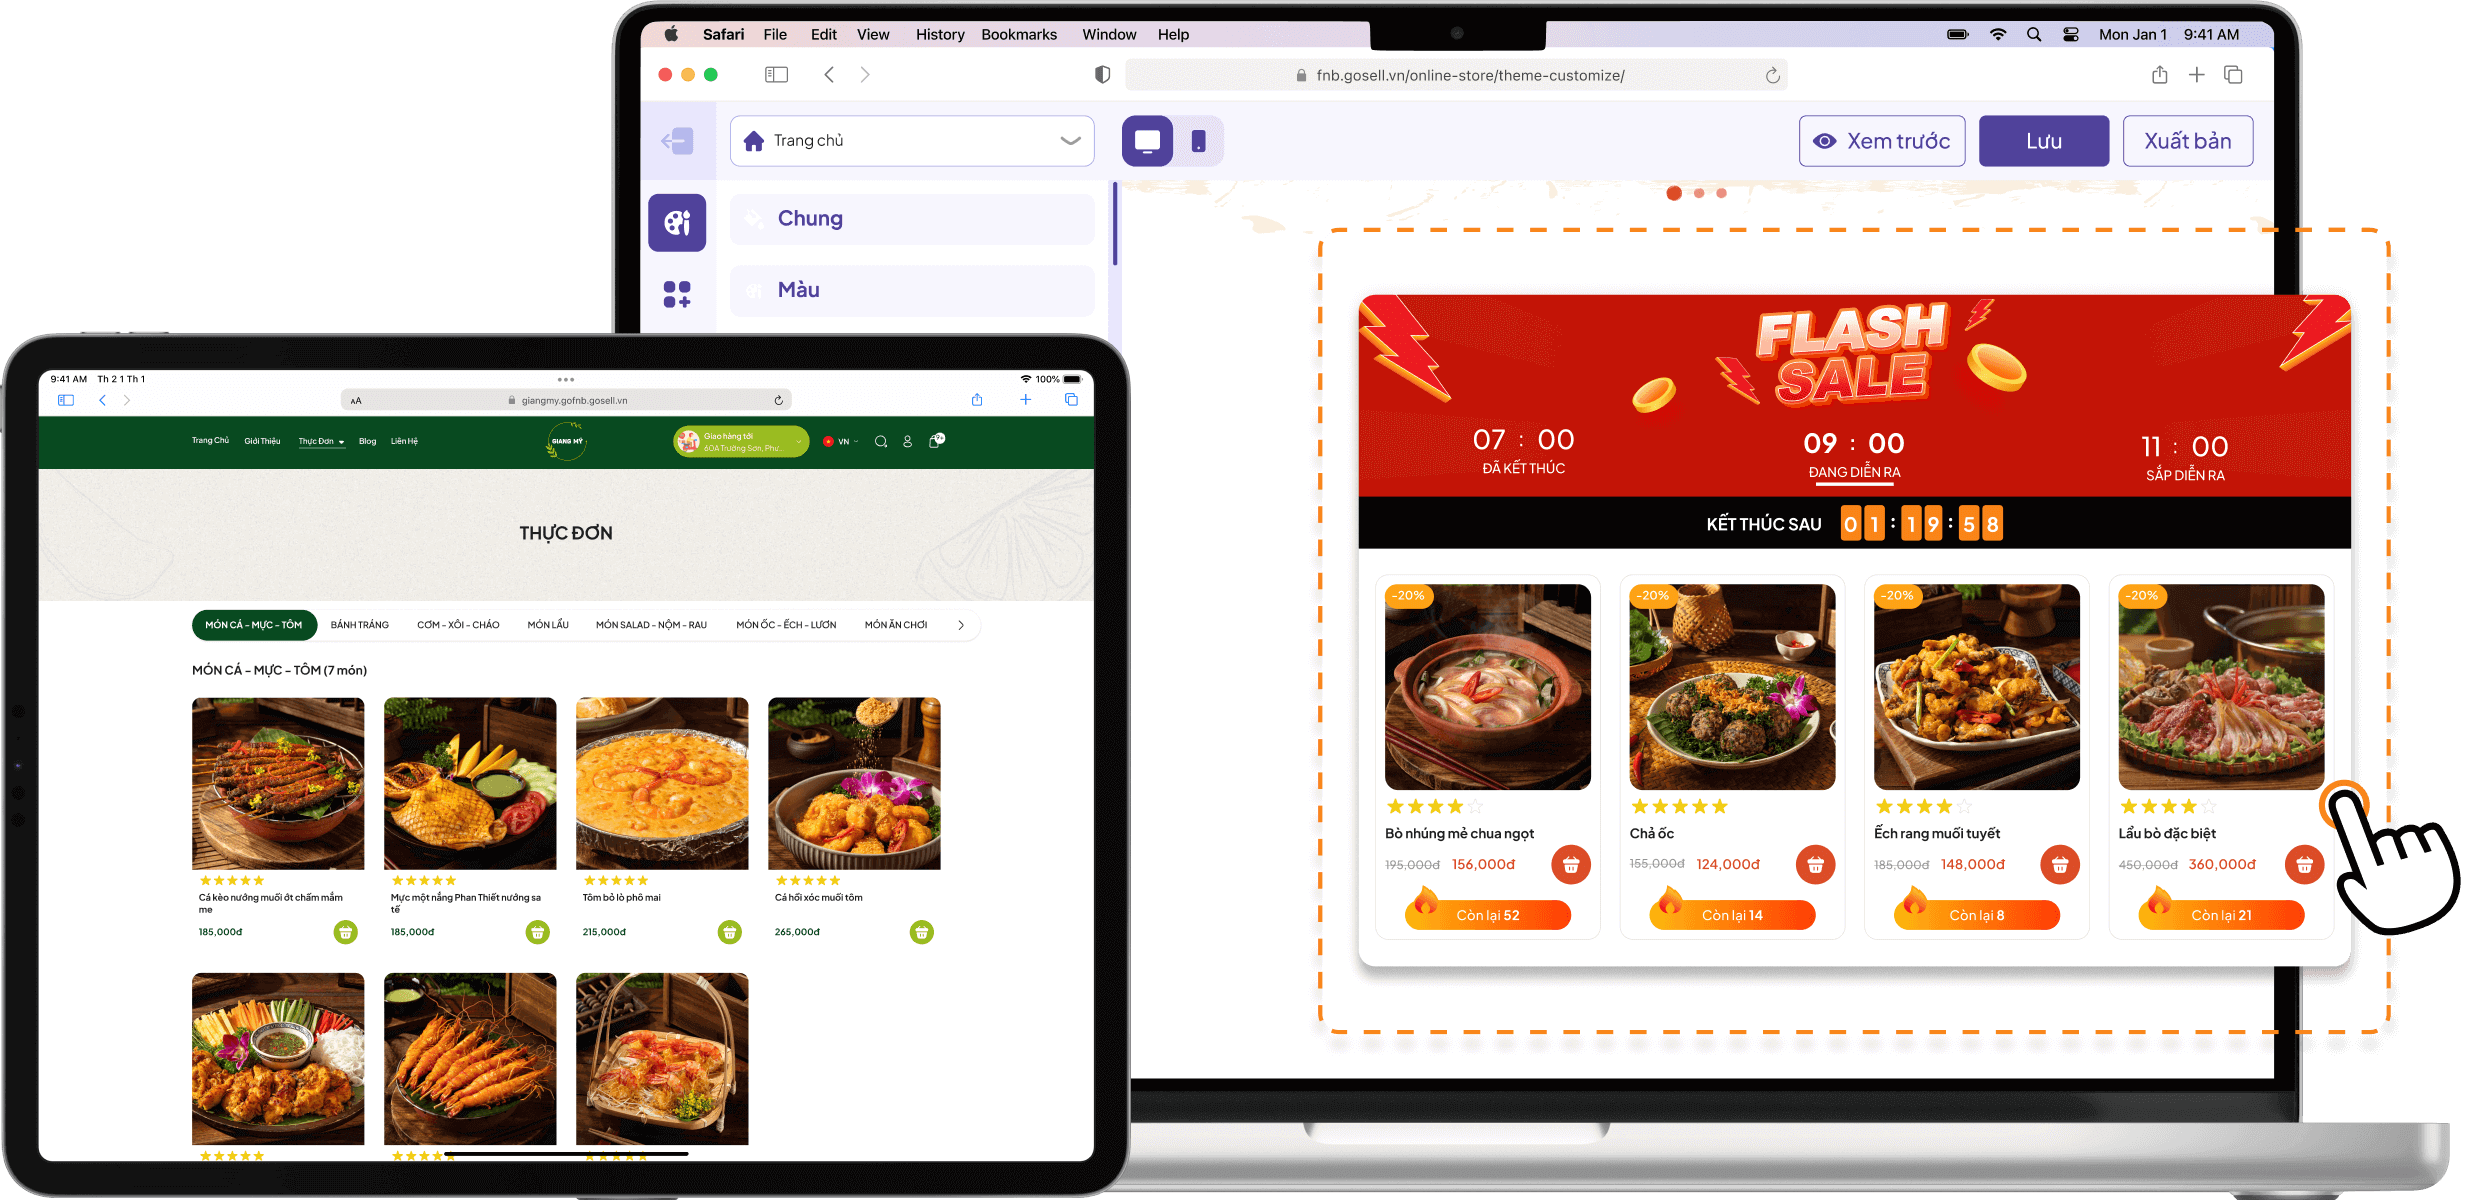 Tự tạo Website đặt món cho nhà hàng/ quán ăn
            của bạn chỉ với vài thao tác kéo thả